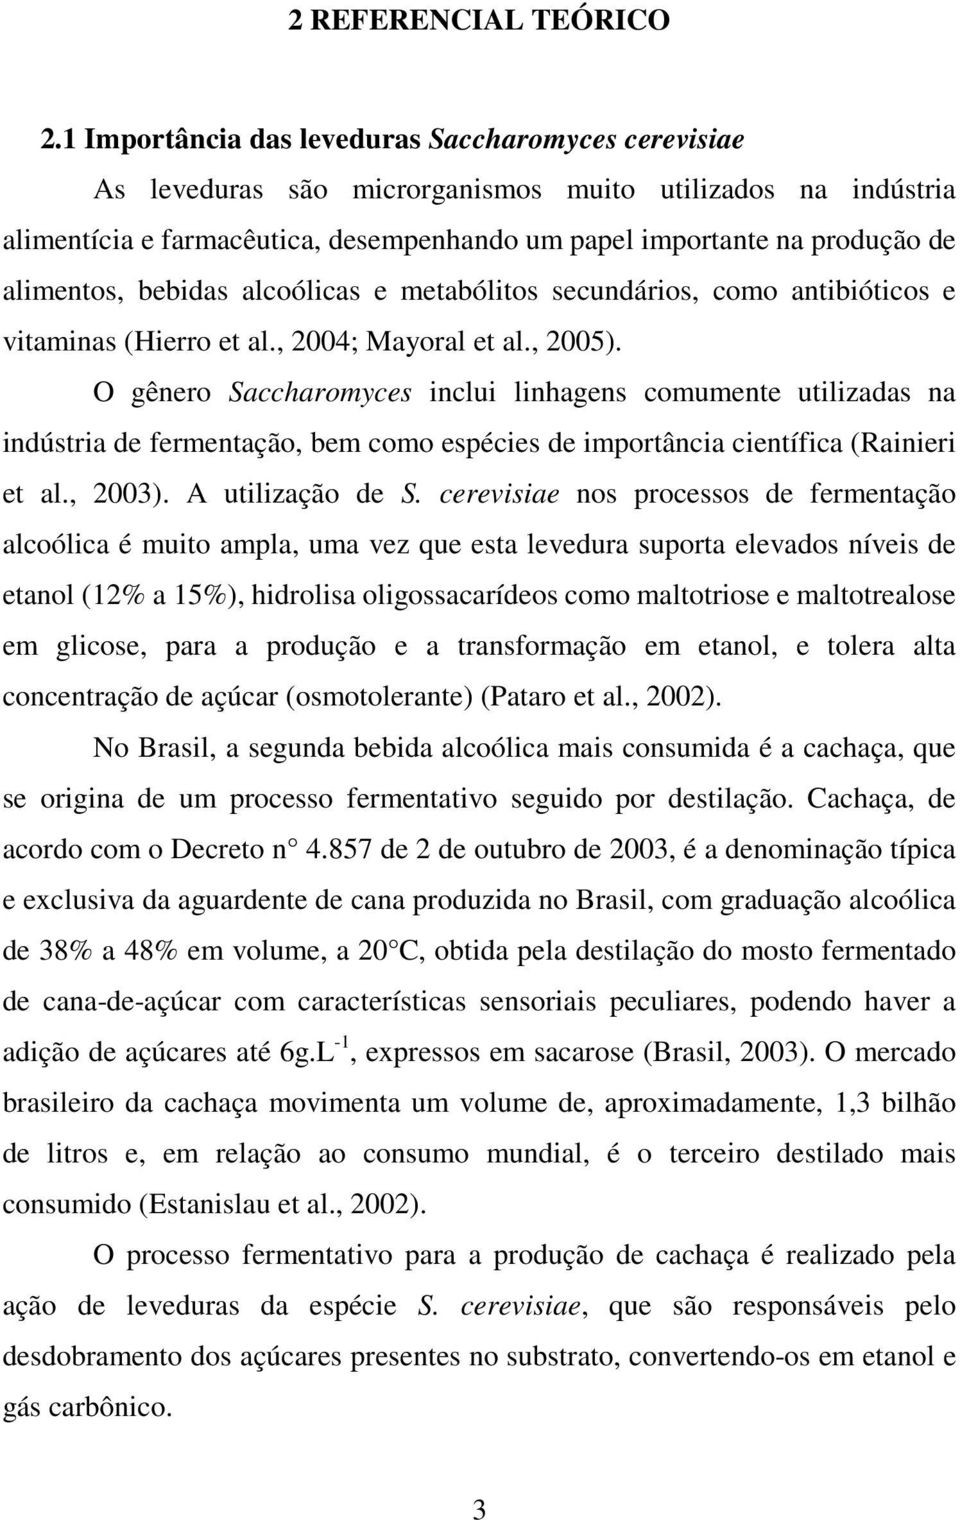 alimentos, bebidas alcoólicas e metabólitos secundários, como antibióticos e vitaminas (Hierro et al., 2004; Mayoral et al., 2005).